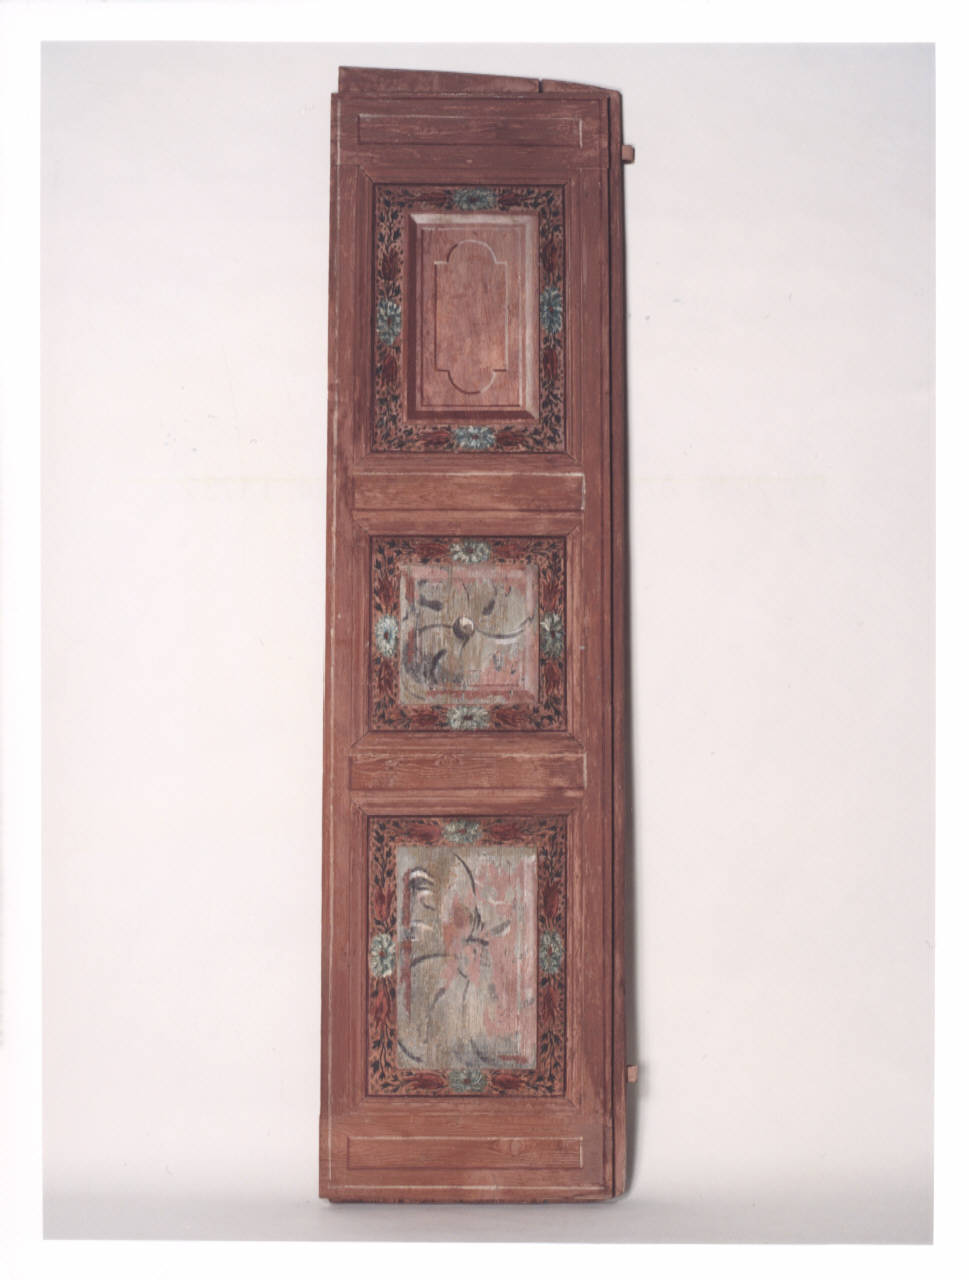 Motivi decorativi con frutti (scuri di finestra dipinti) - manifattura lombarda (prima metà sec. XVIII)